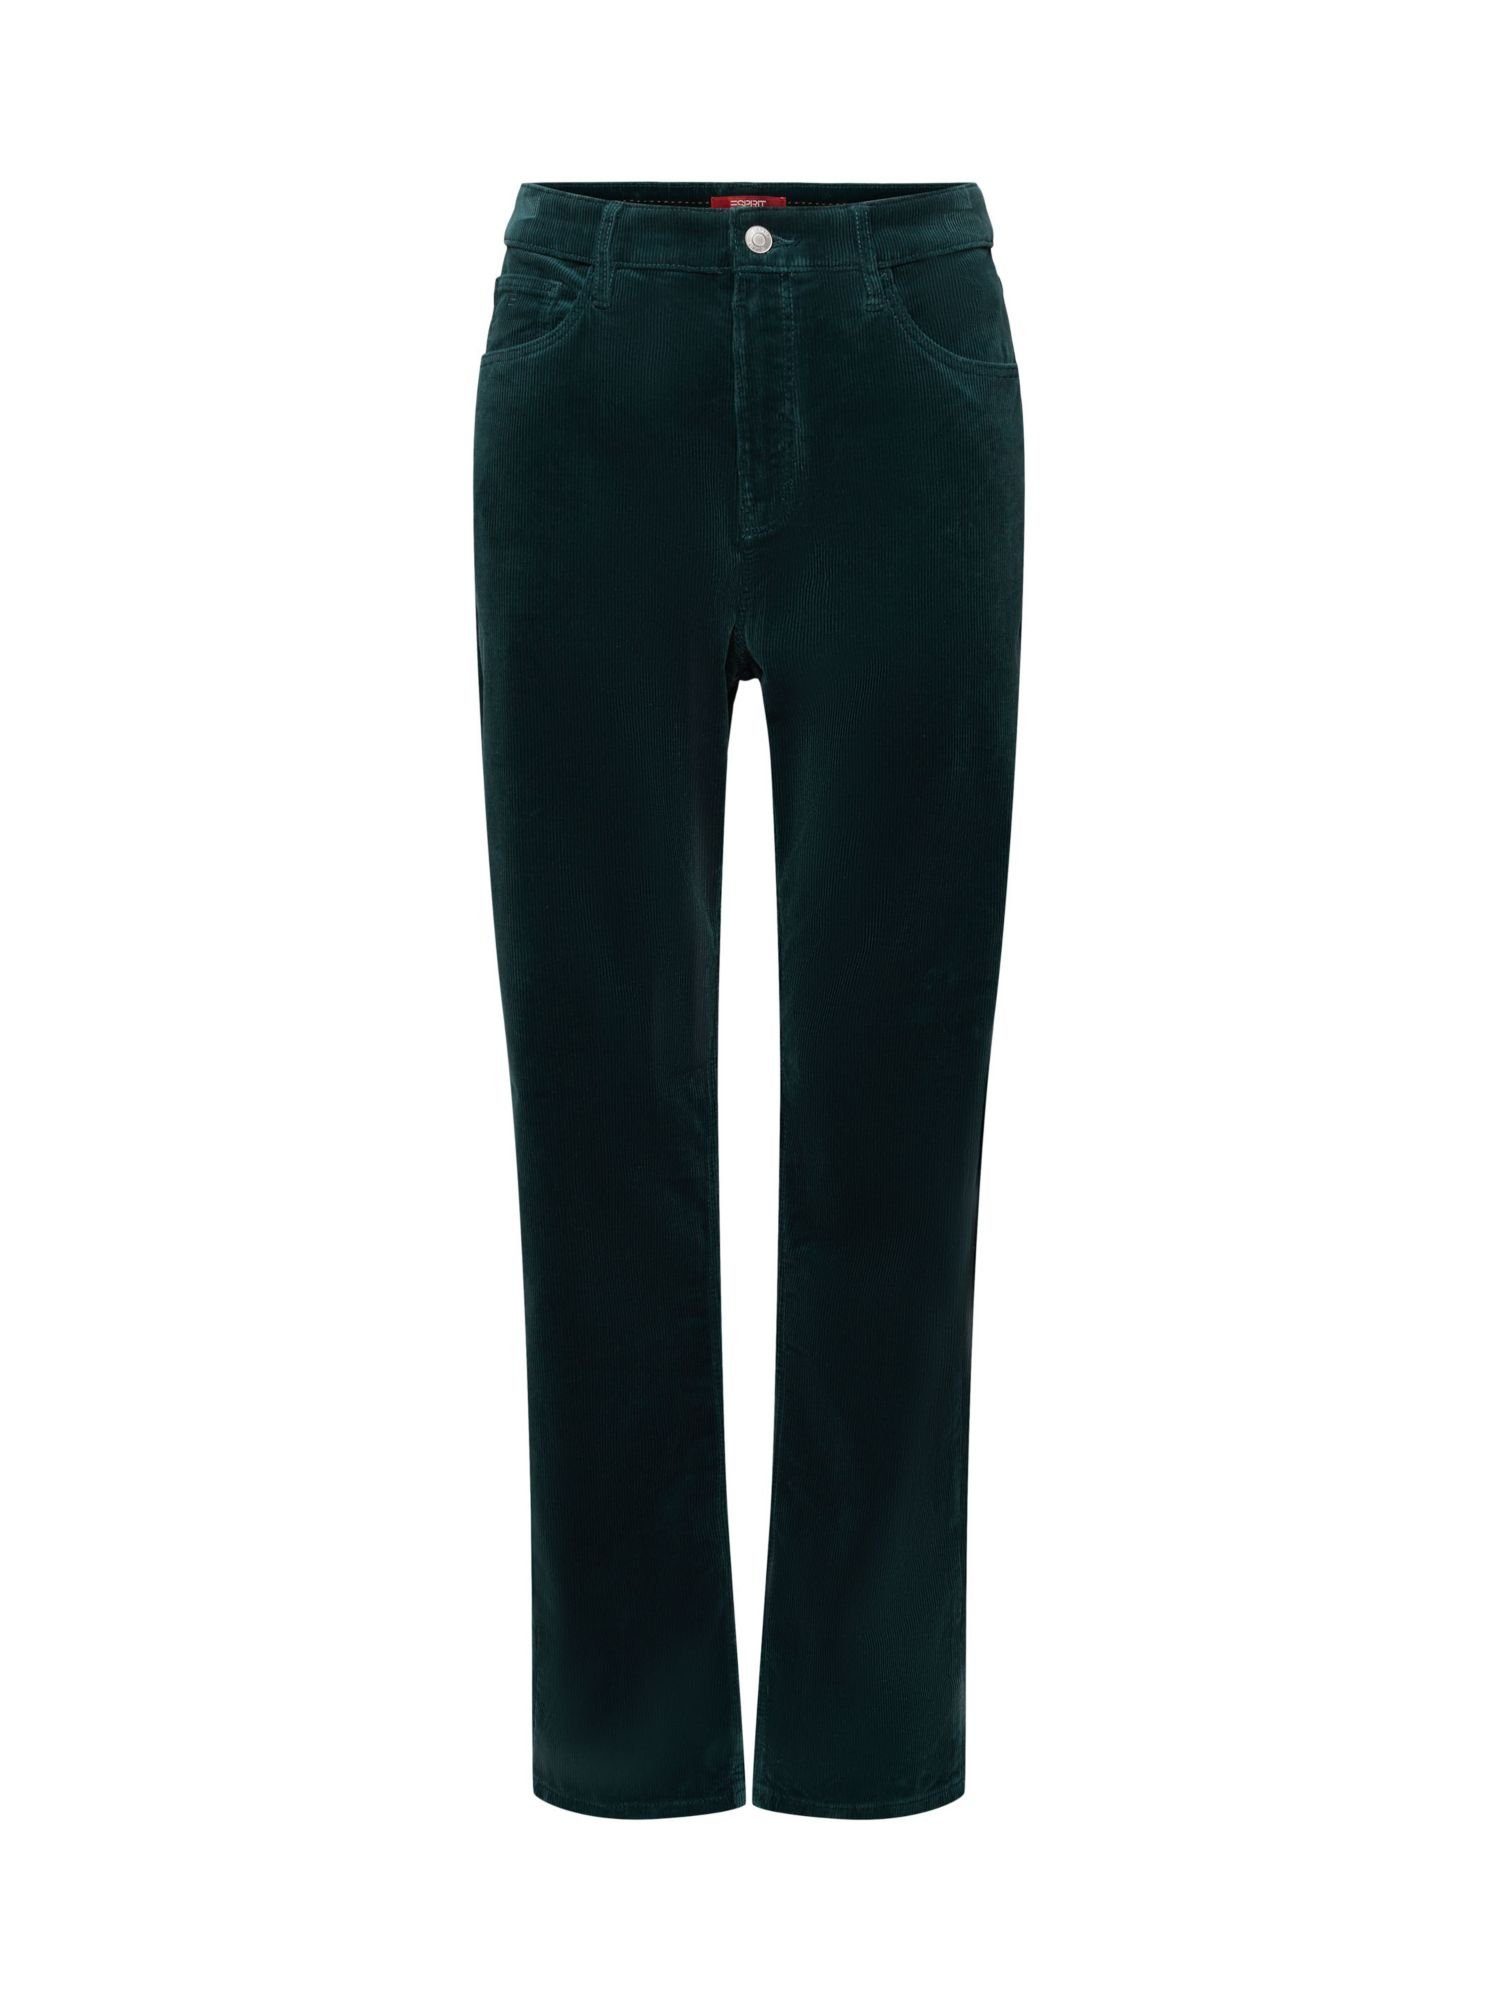 Neue Artikel zum Kauf Esprit Slim-fit-Jeans Cordhose mit Passform und GREEN gerader hohem EMERALD Bund